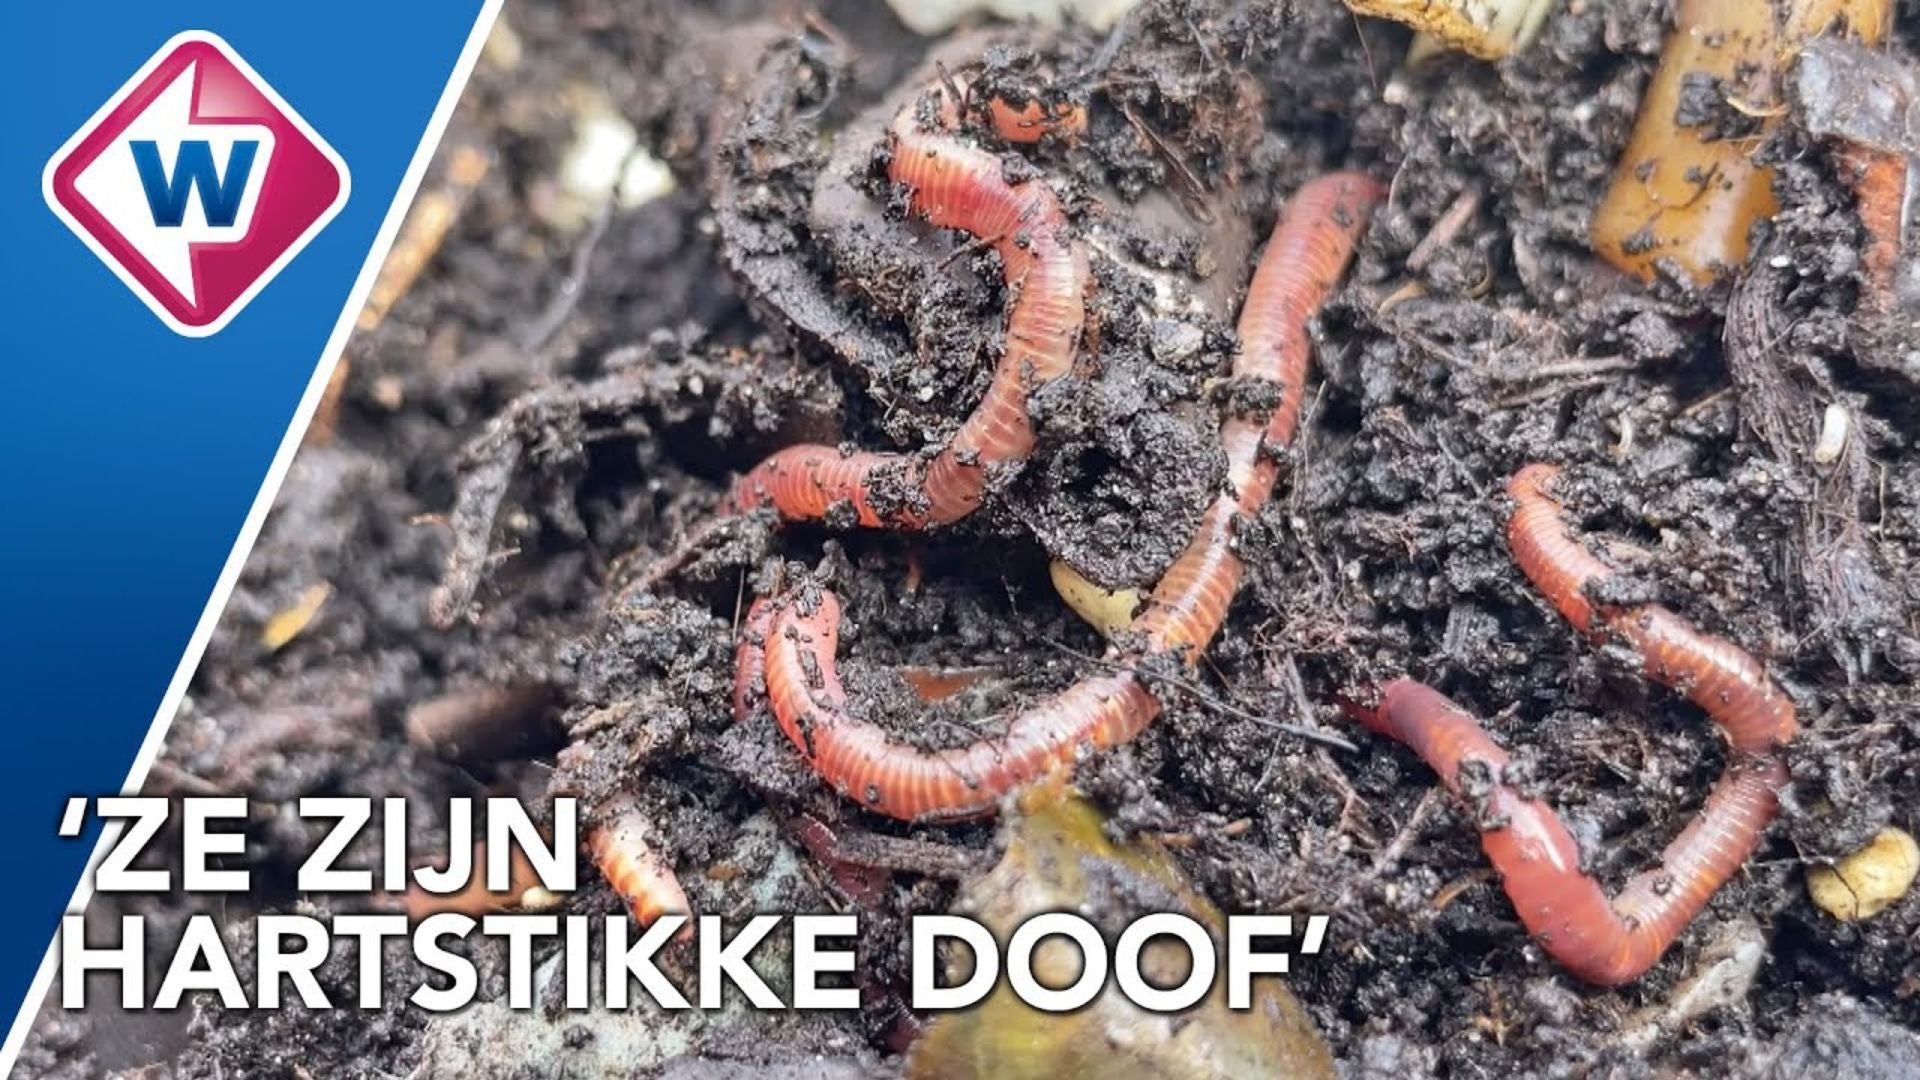 [Video] Dierendag: Ode aan de compostworm door Omroep West